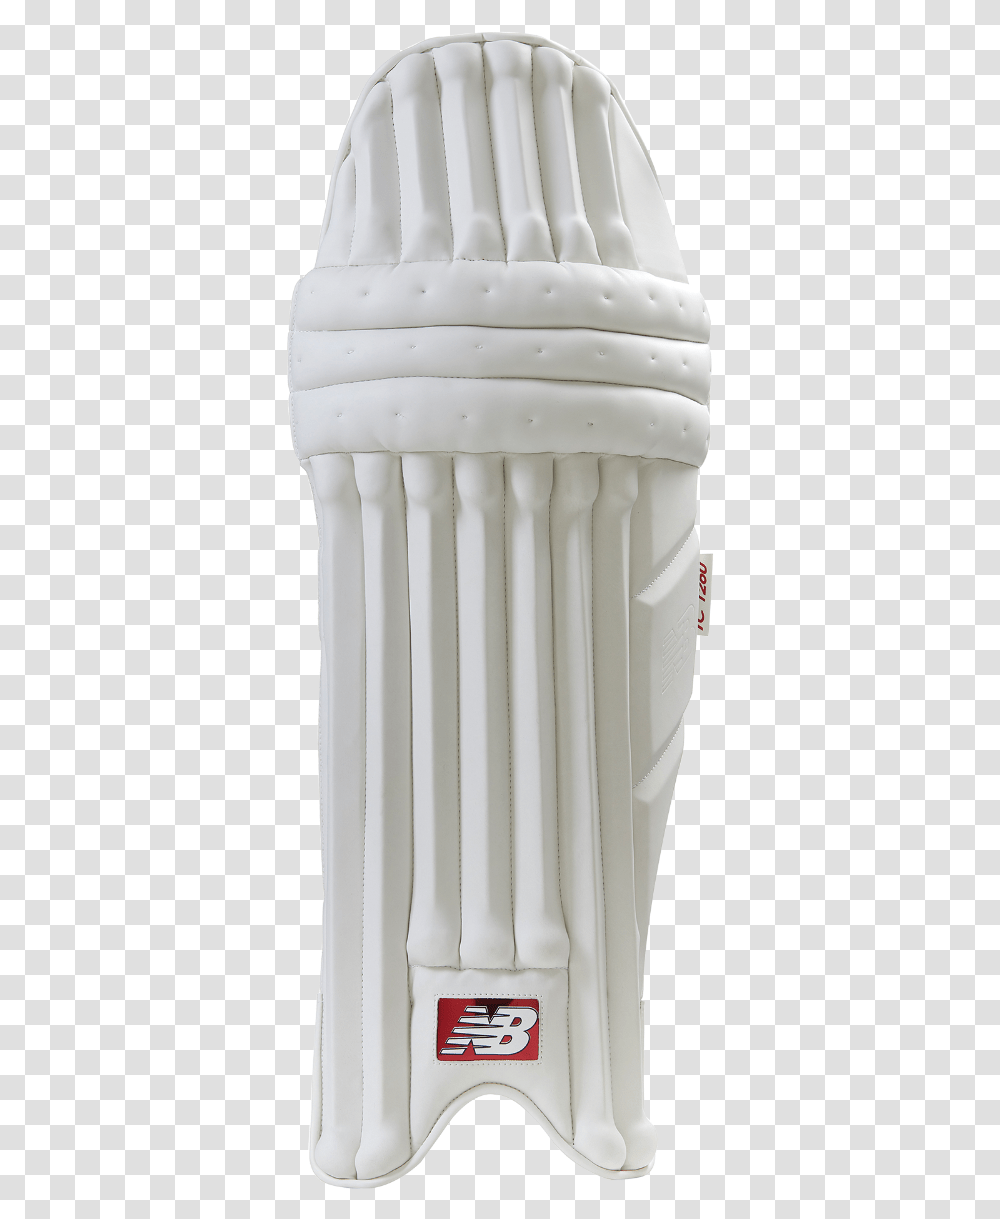 2019 New Balance Tc 1260 Batting Pads Cricket Pads, Architecture, Building, Pillar, Column Transparent Png